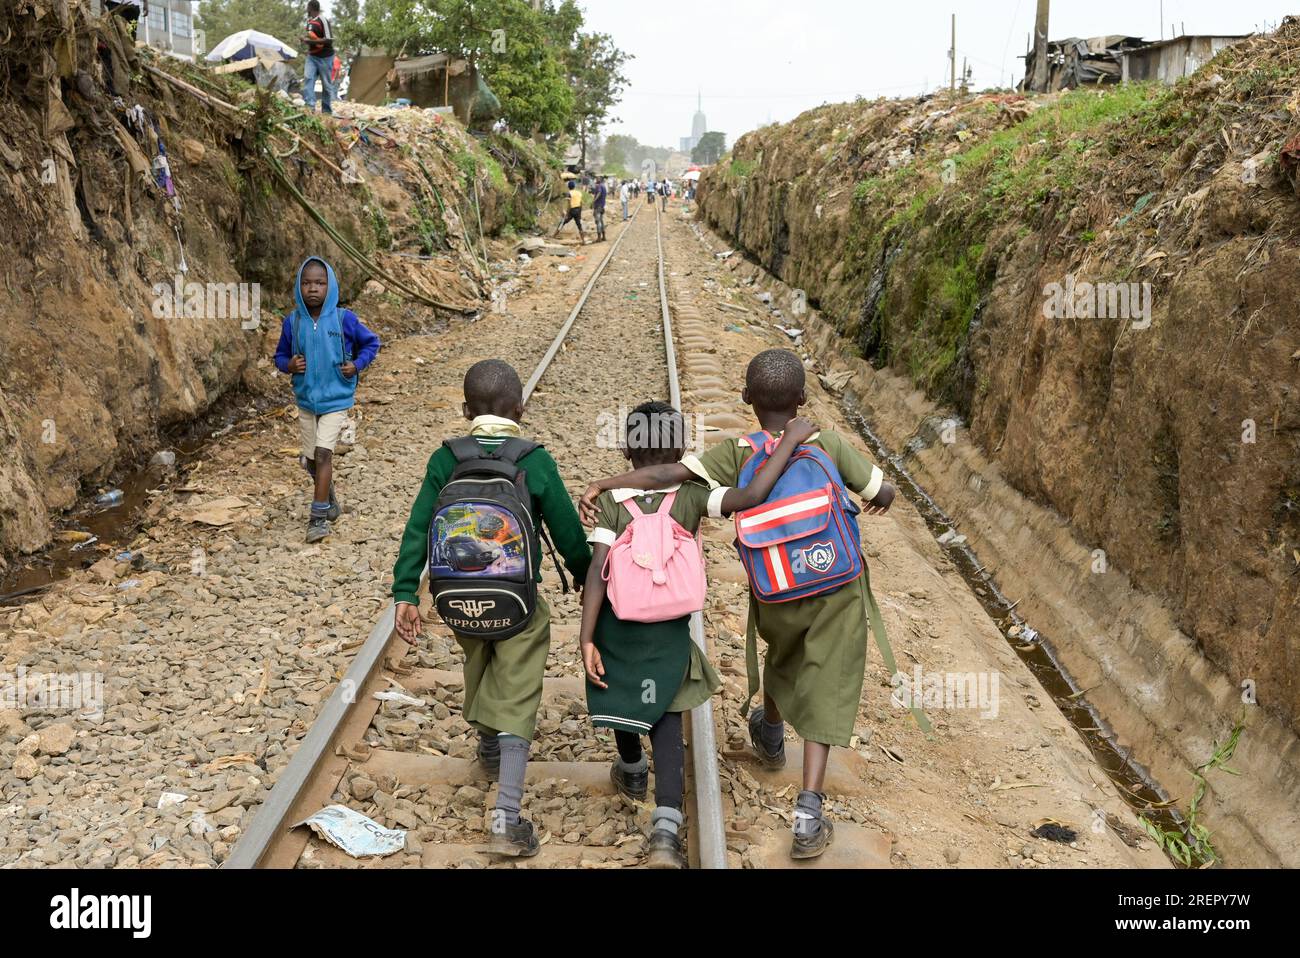 KENYA, Nairobi, Kibera slum, pupils with tornister walking from school to home on Kibera railway track / KENIA, Nairobi, Slum Kibera, Kinder gehen nach der Schule nach Hause an der Kibera Bahnlinie Stock Photo